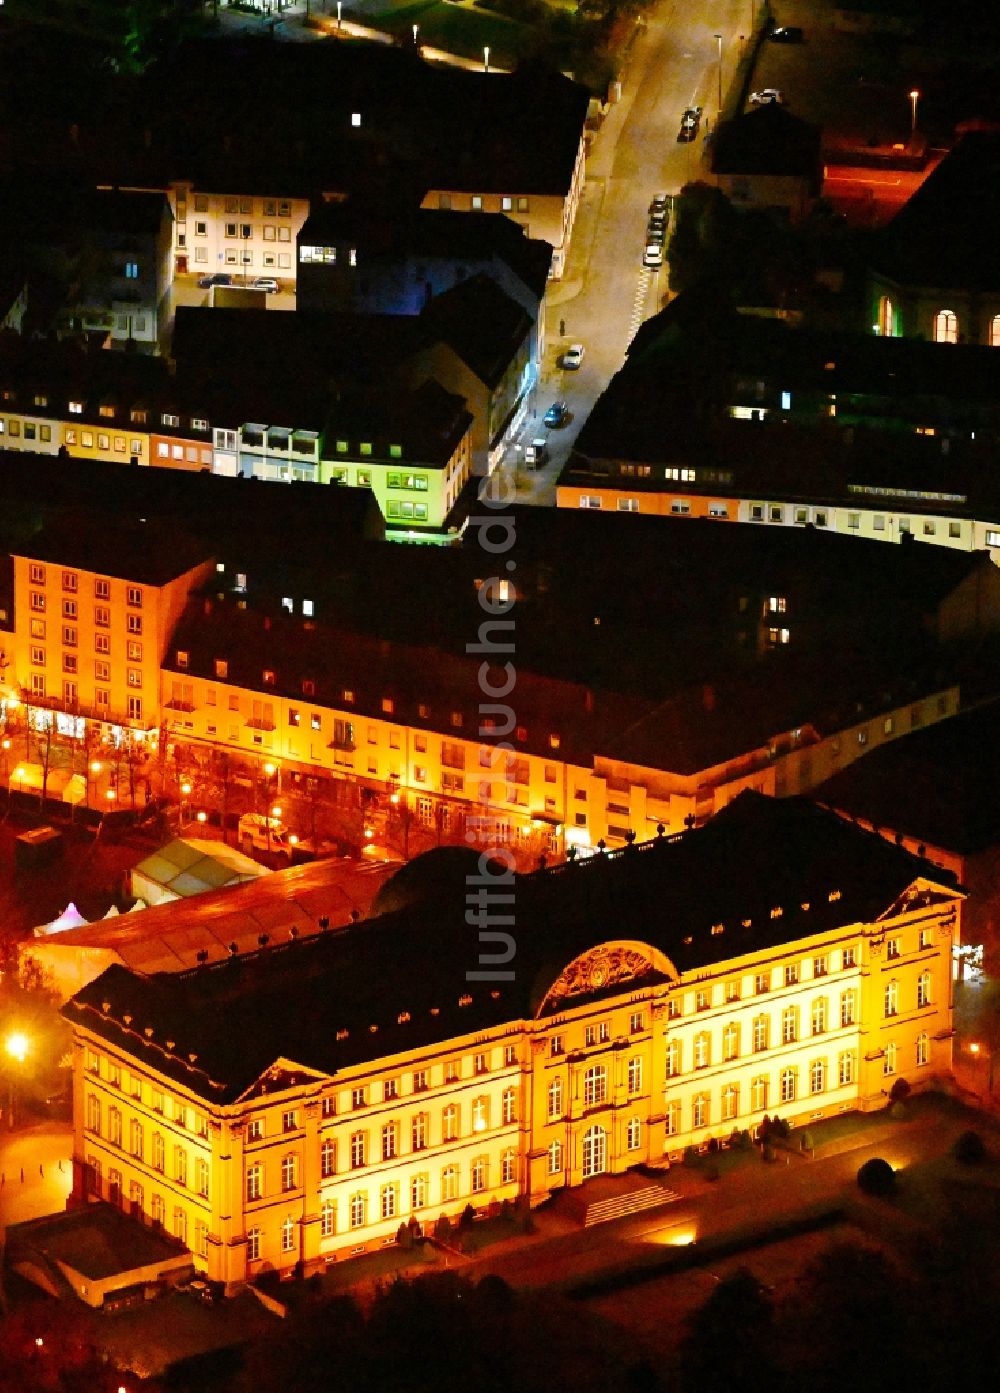 Nacht-Luftaufnahme Zweibrücken - Nachtluftbild Palais des Schloss am Schlossplatz in Zweibrücken im Bundesland Rheinland-Pfalz, Deutschland